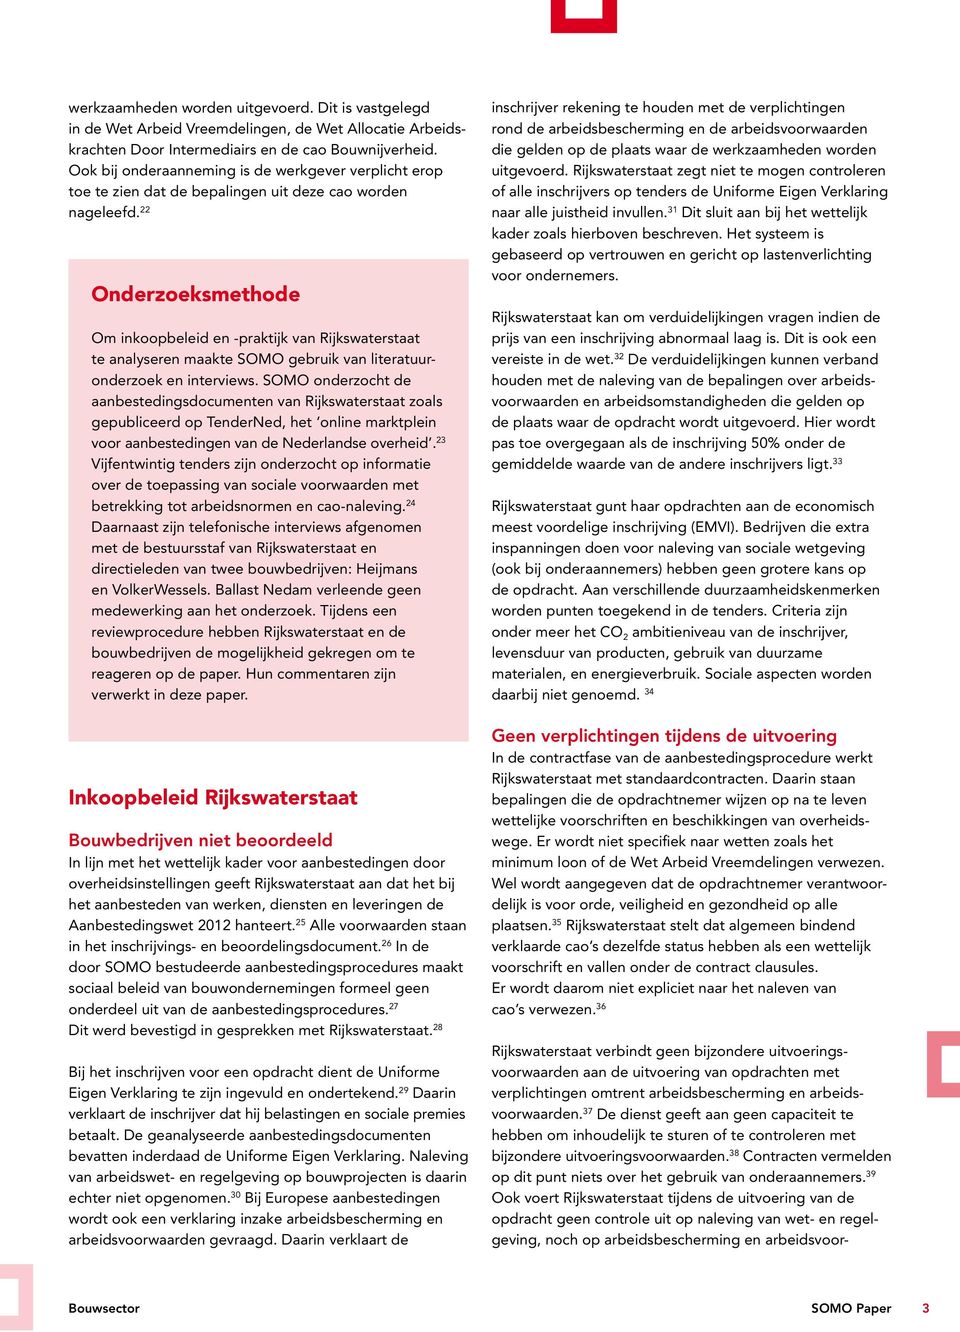 22 Onderzoeksmethode Om inkoopbeleid en -praktijk van Rijkswaterstaat te analyseren maakte SOMO gebruik van literatuuronderzoek en interviews.